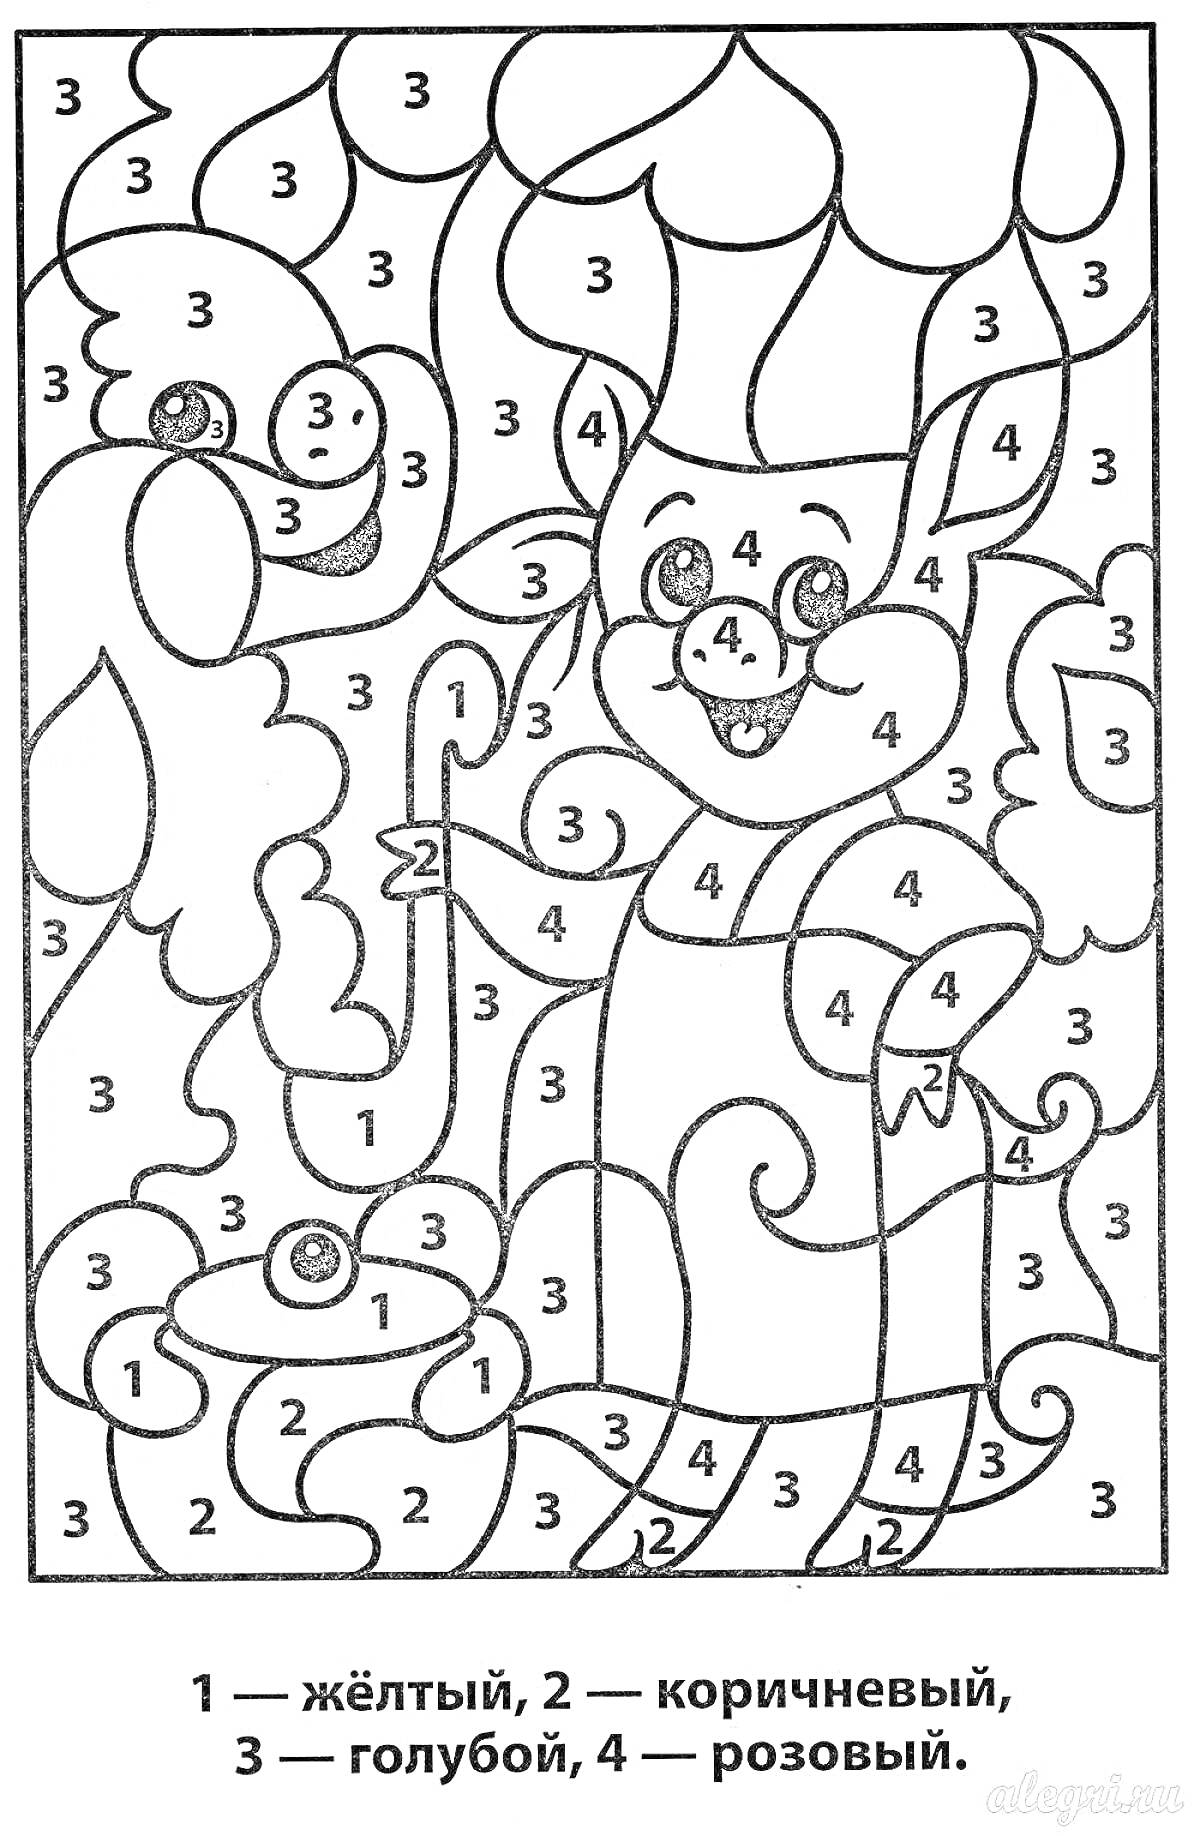 Раскраска Сказочные персонажи: кот с зонтом, медведь облак, улитка